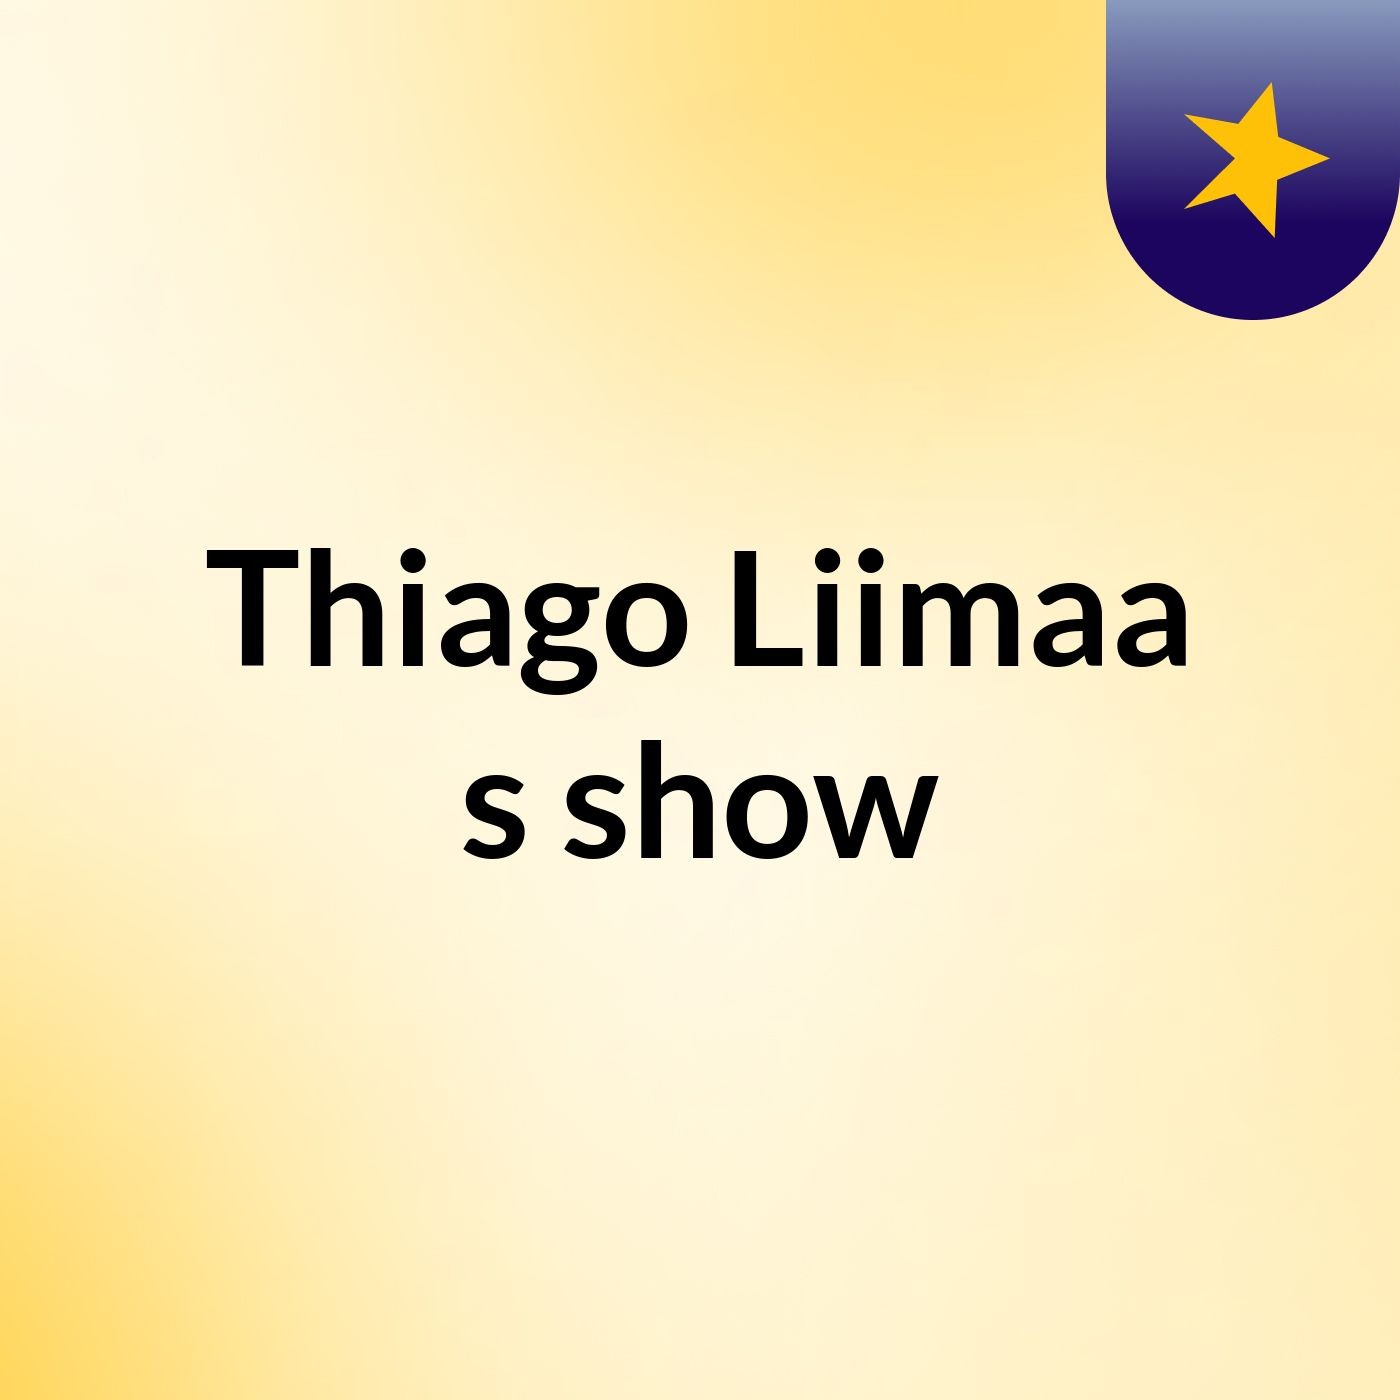 Thiago Liimaa's show